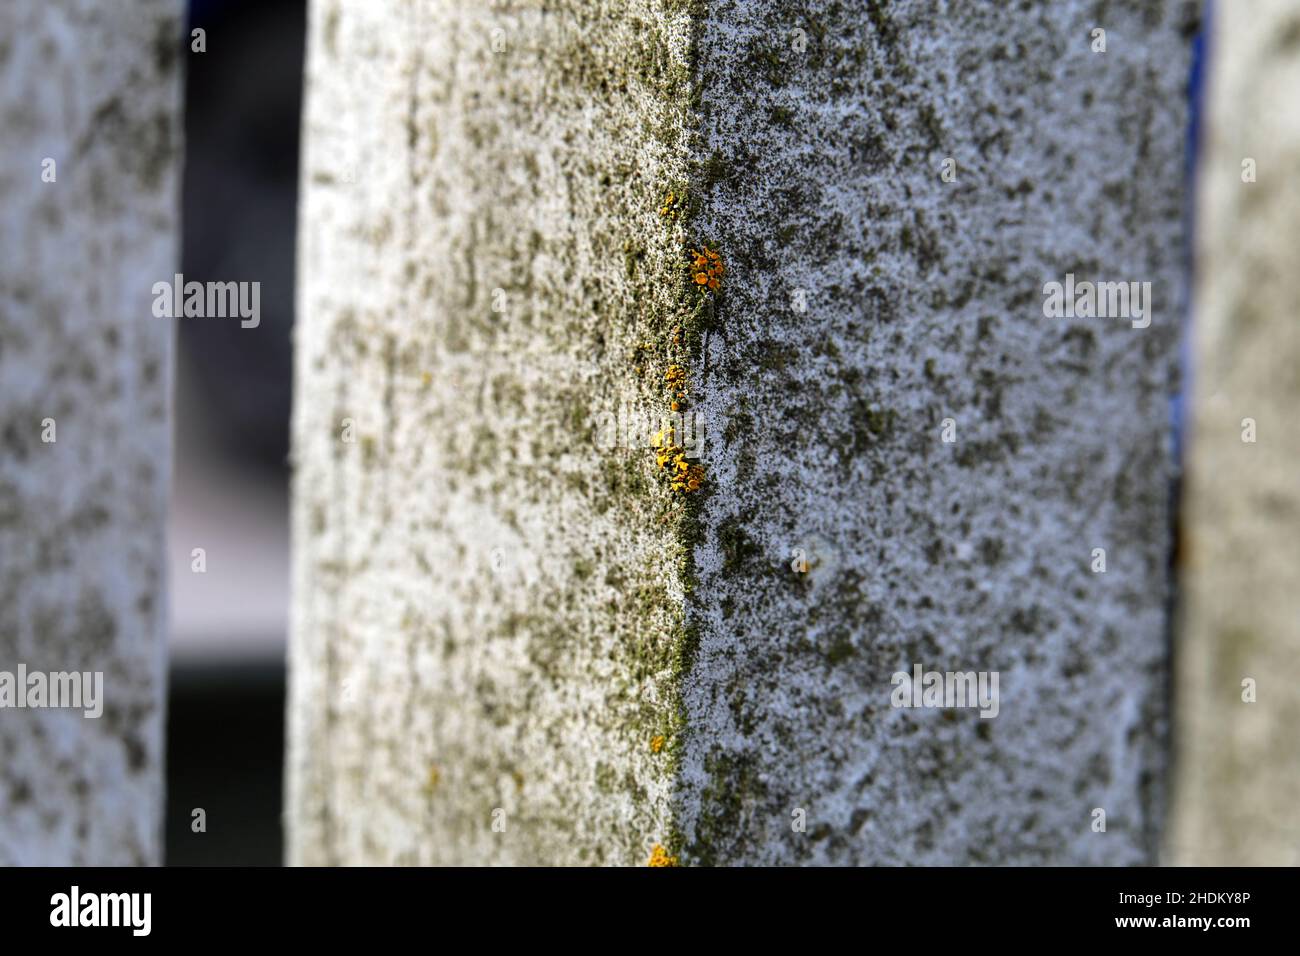 Primo piano immagine di colore di una recinzione di legno bianco con un po 'di muschio e lichene che crescono su di esso. La natura sta assumendo le strutture fabbricate. Foto Stock